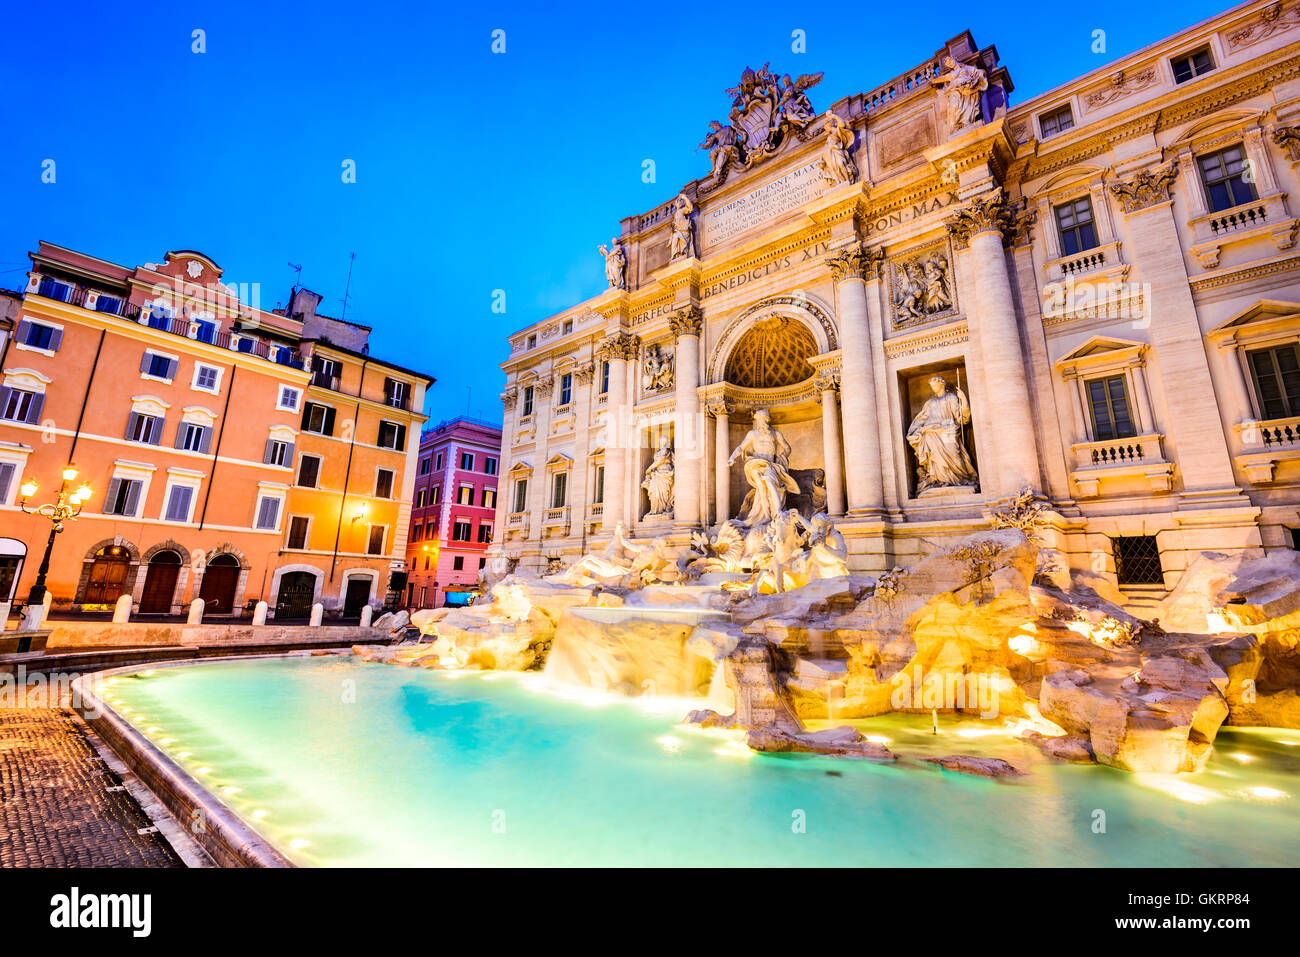 Rome, Italy. Stunningly ornate Trevi Fountain and Poli Palace  (1762) illuminated at night in the heart of Roma. Stock Photo